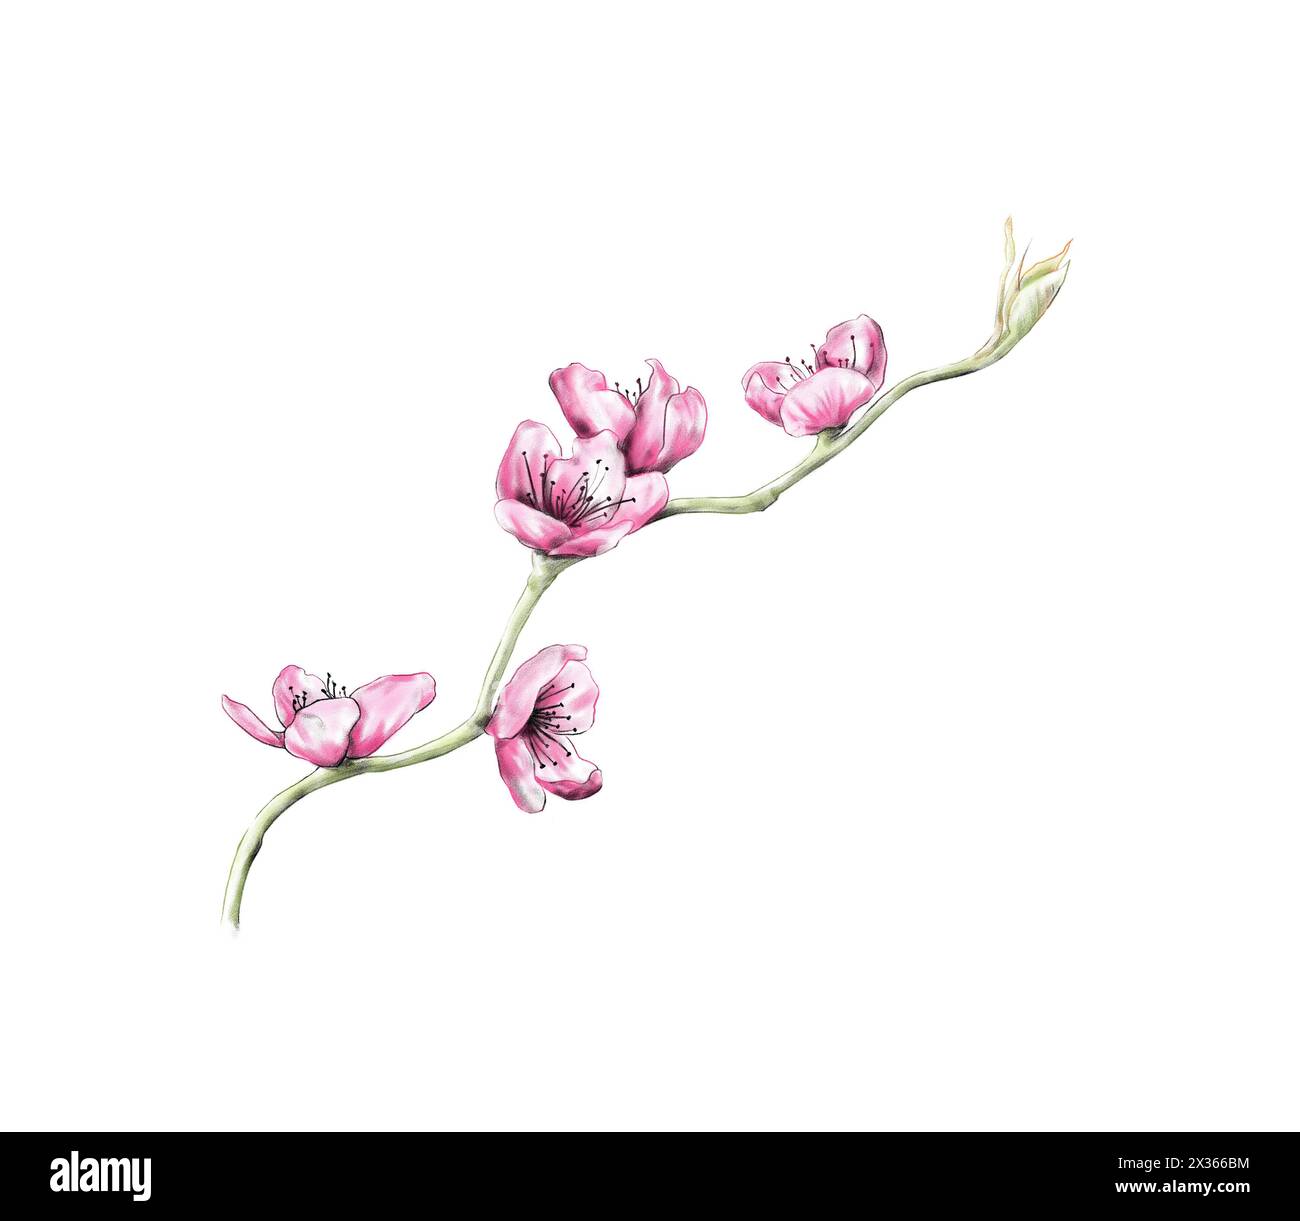 Branche d'arbre de sakura fleurie avec des fleurs roses sur fond blanc, illustration Banque D'Images